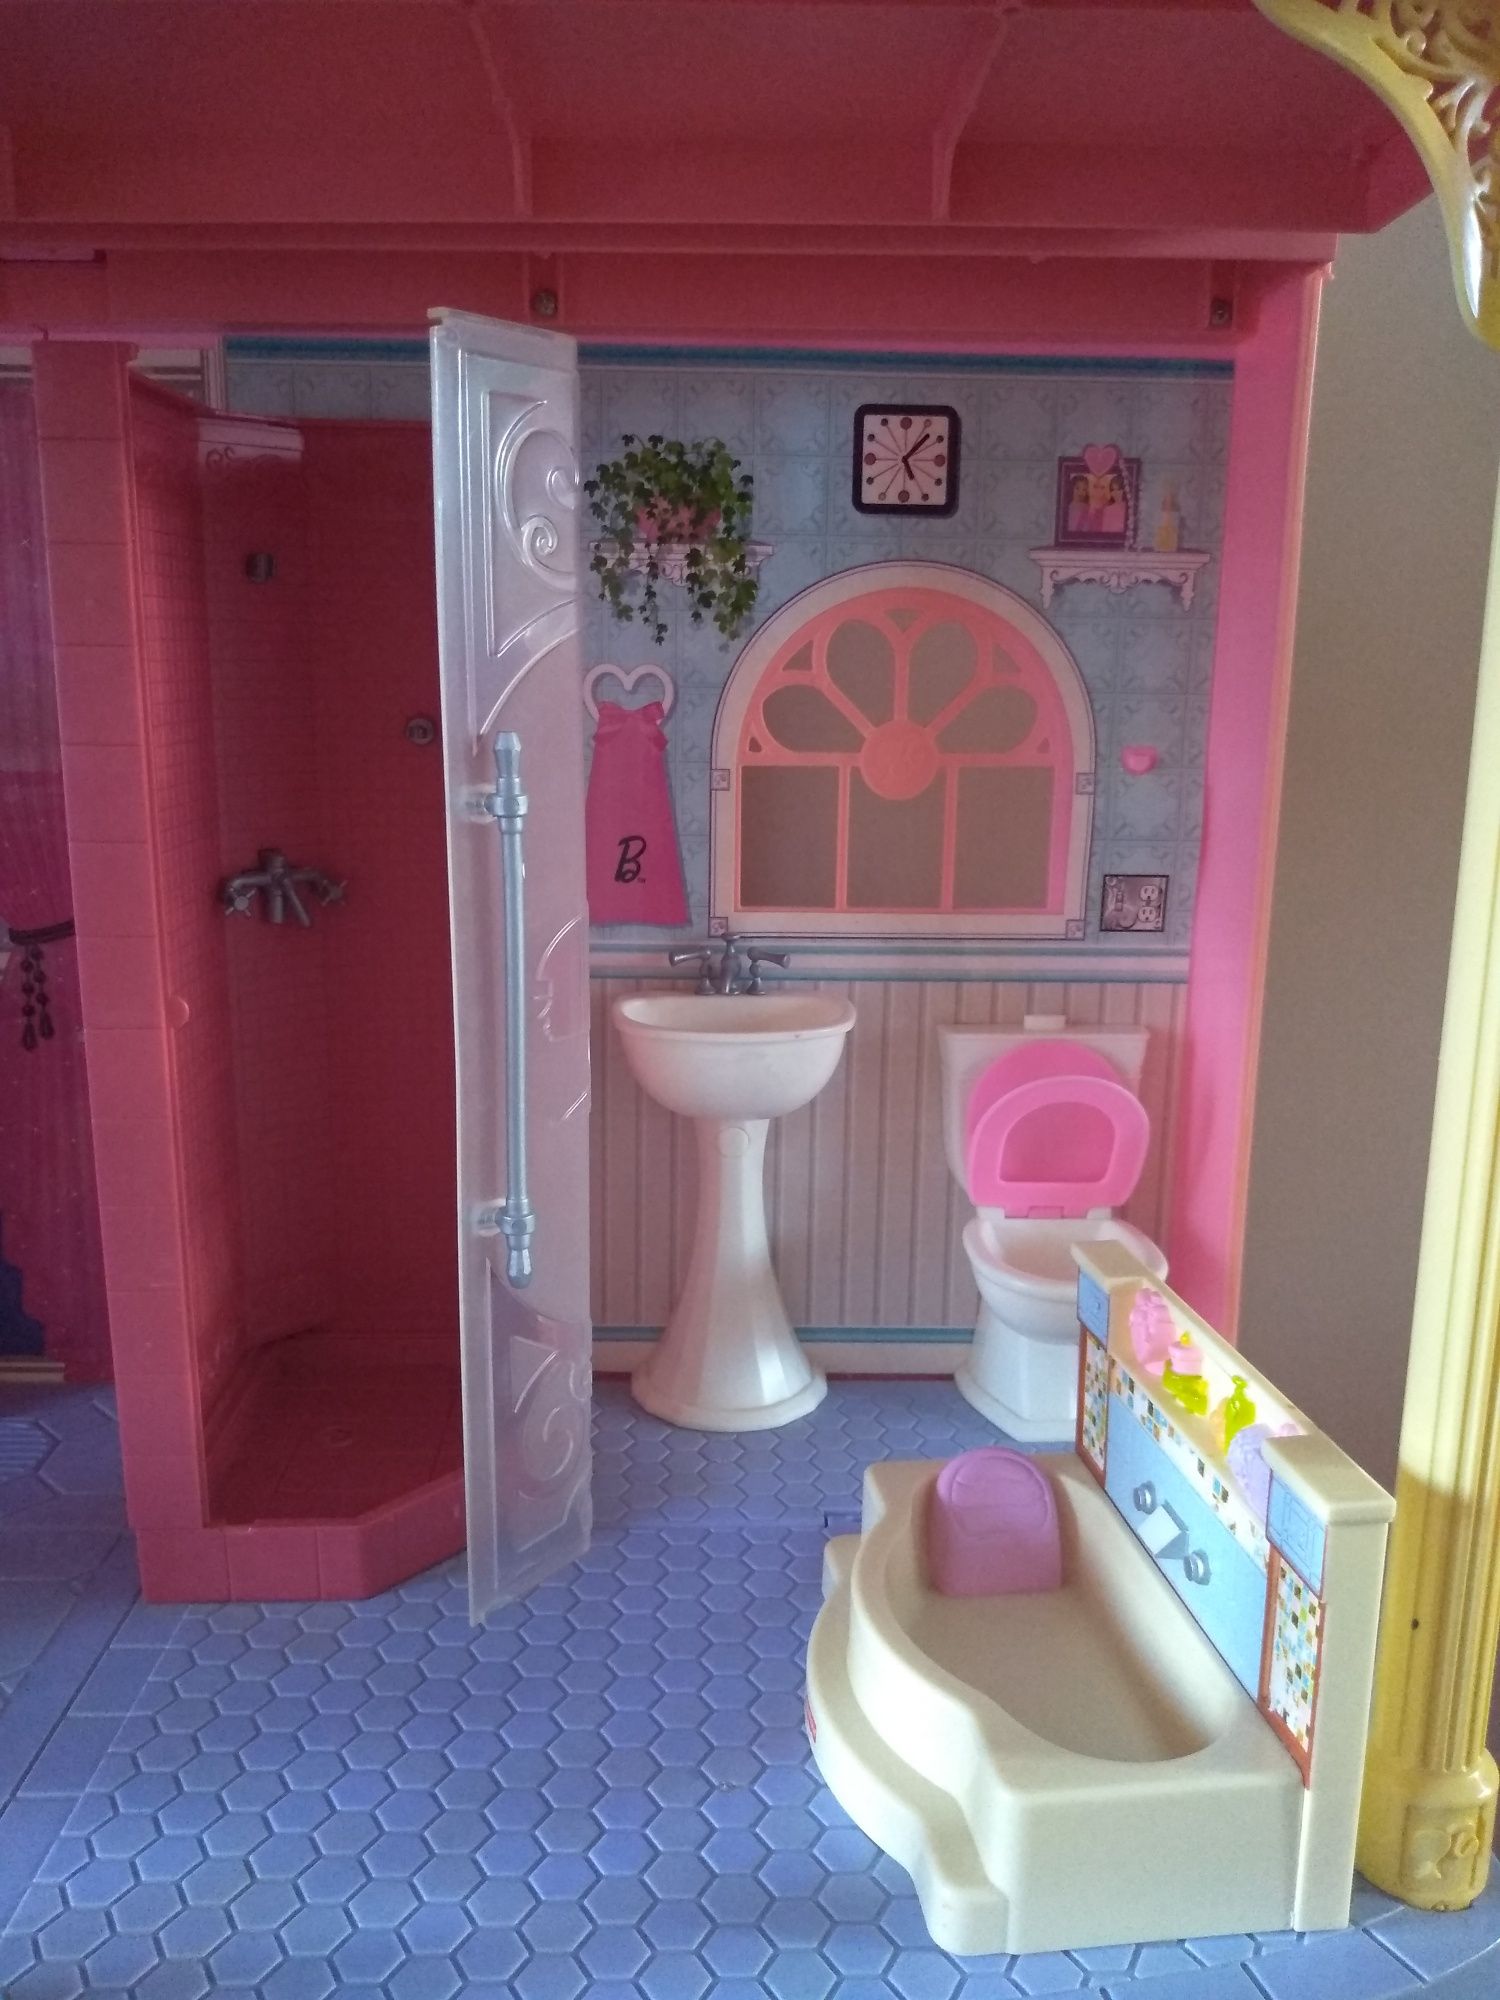 Mega duży unikatowy domek Barbie